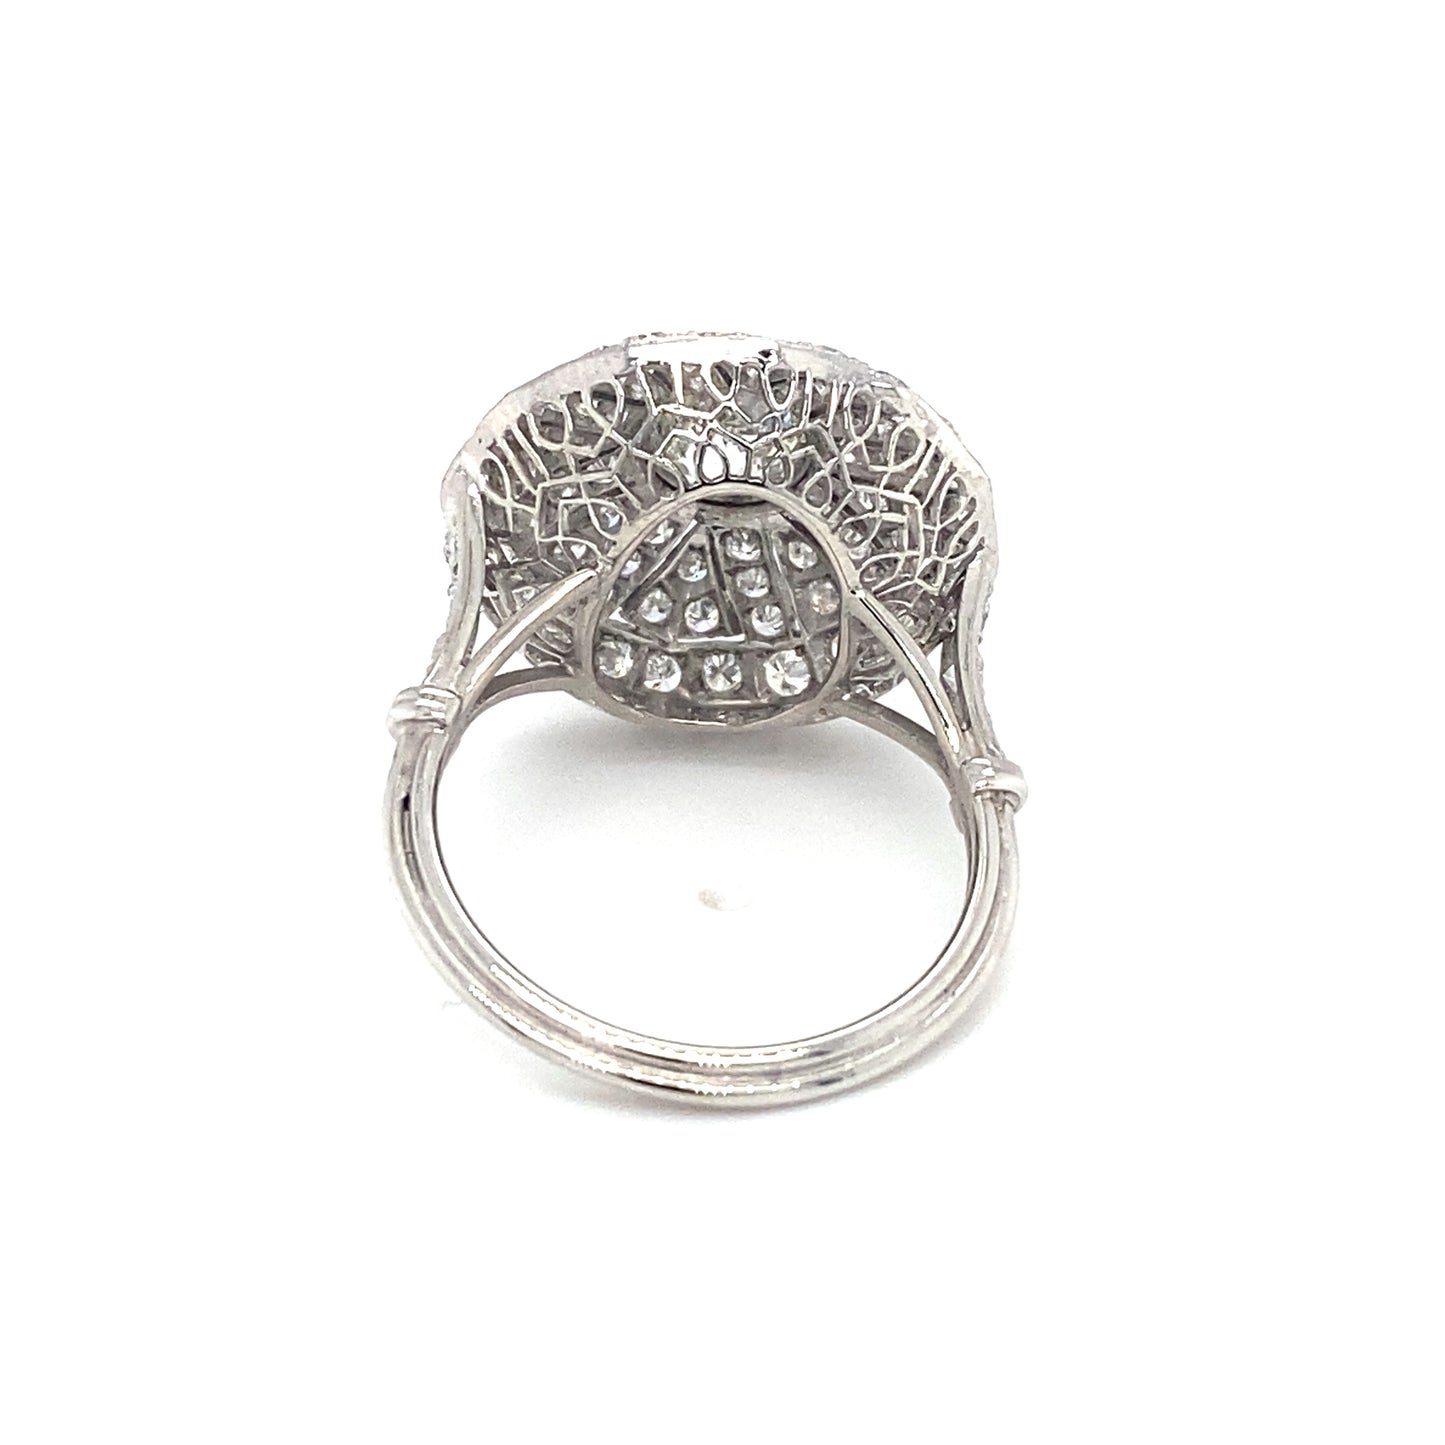 Circa 1930s Art Deco 1.99CTW Diamond Princess Cocktail Ring in Platinum